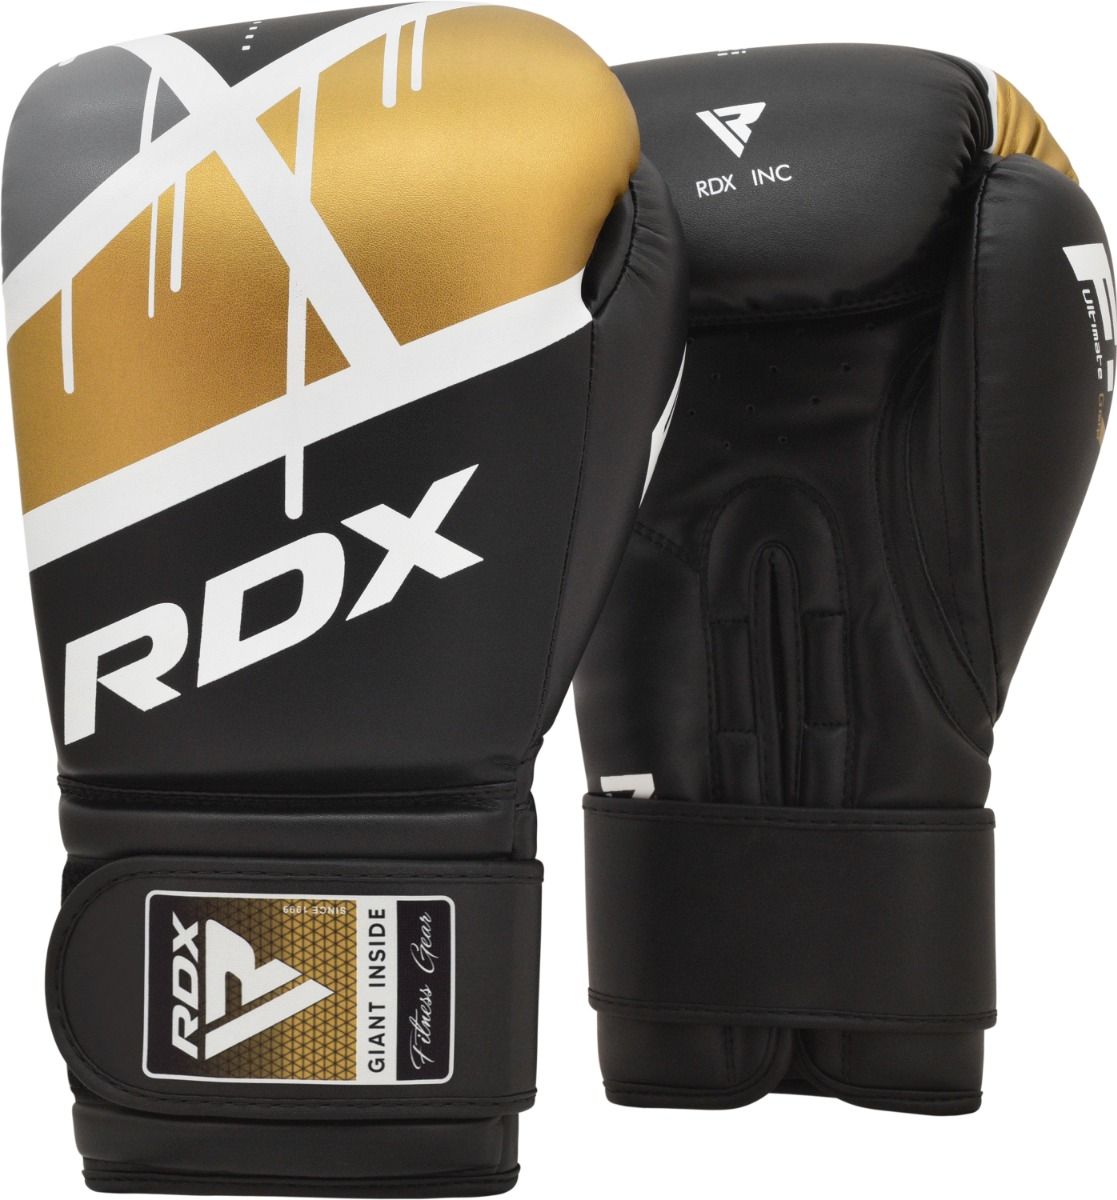  Боксерские перчатки RDX BGR F7 черные 